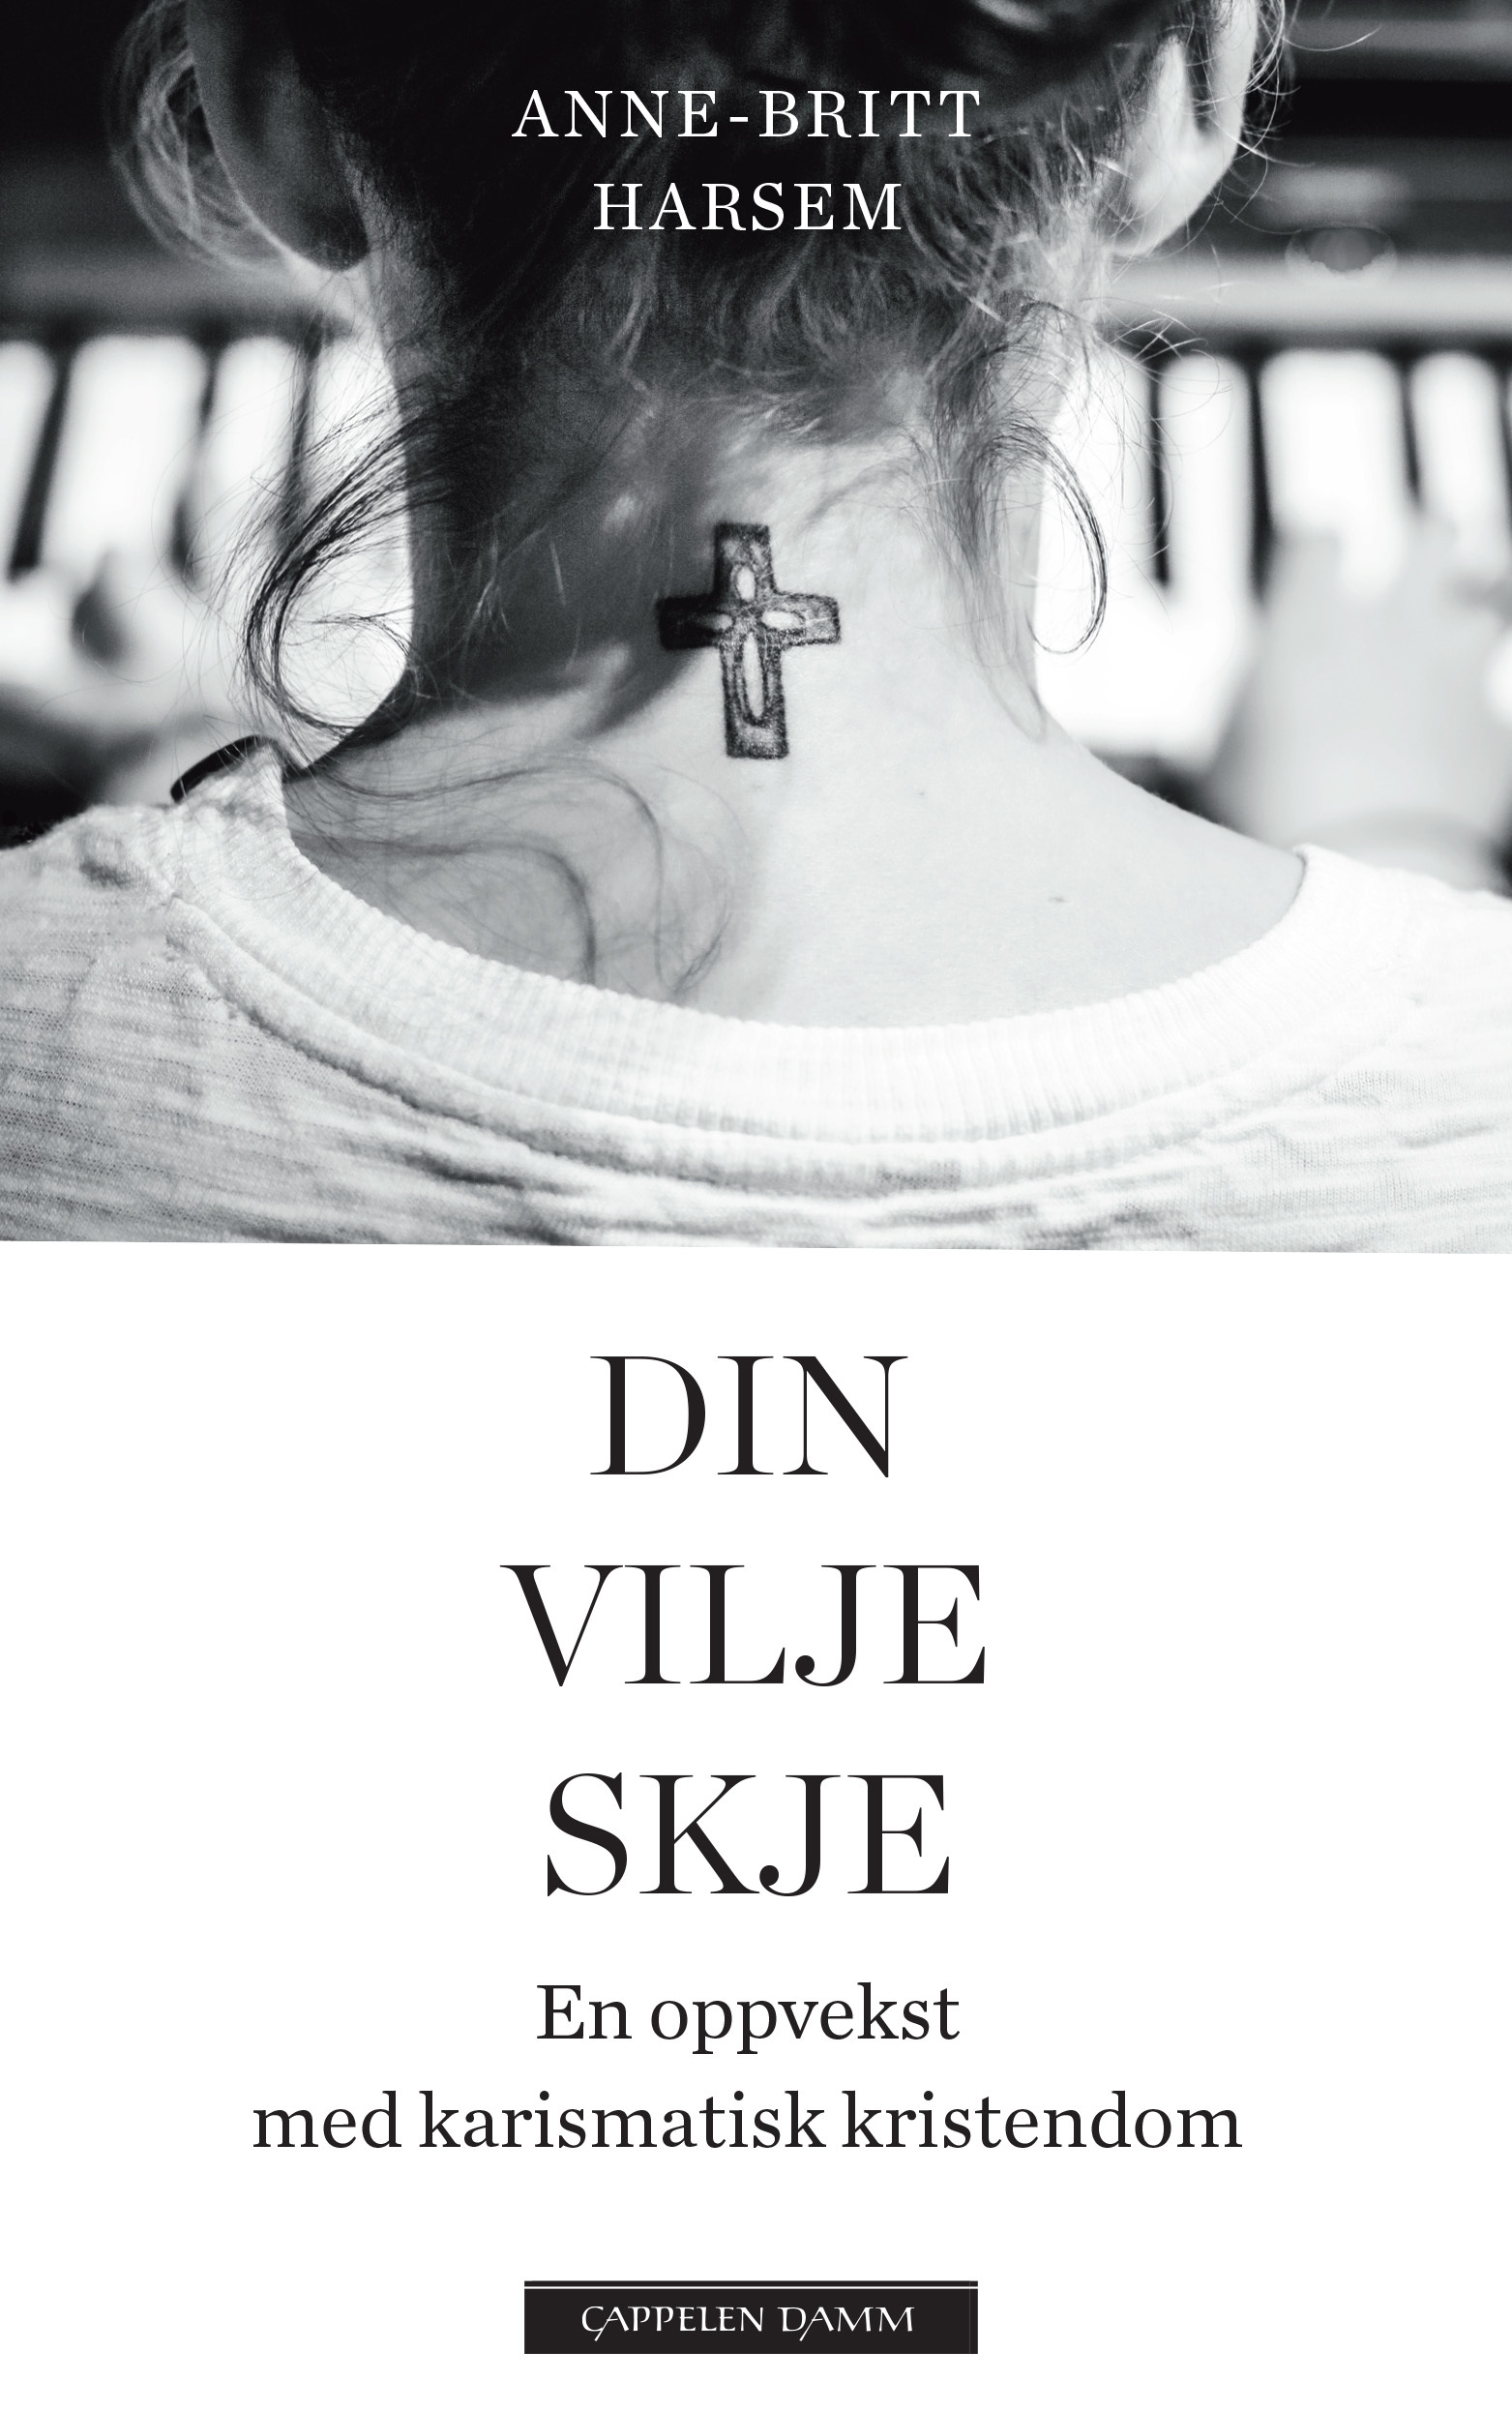 Anne-Britt Harsem: Din vilje skje (EBook, Norwegisch language, Cappelen Damm)